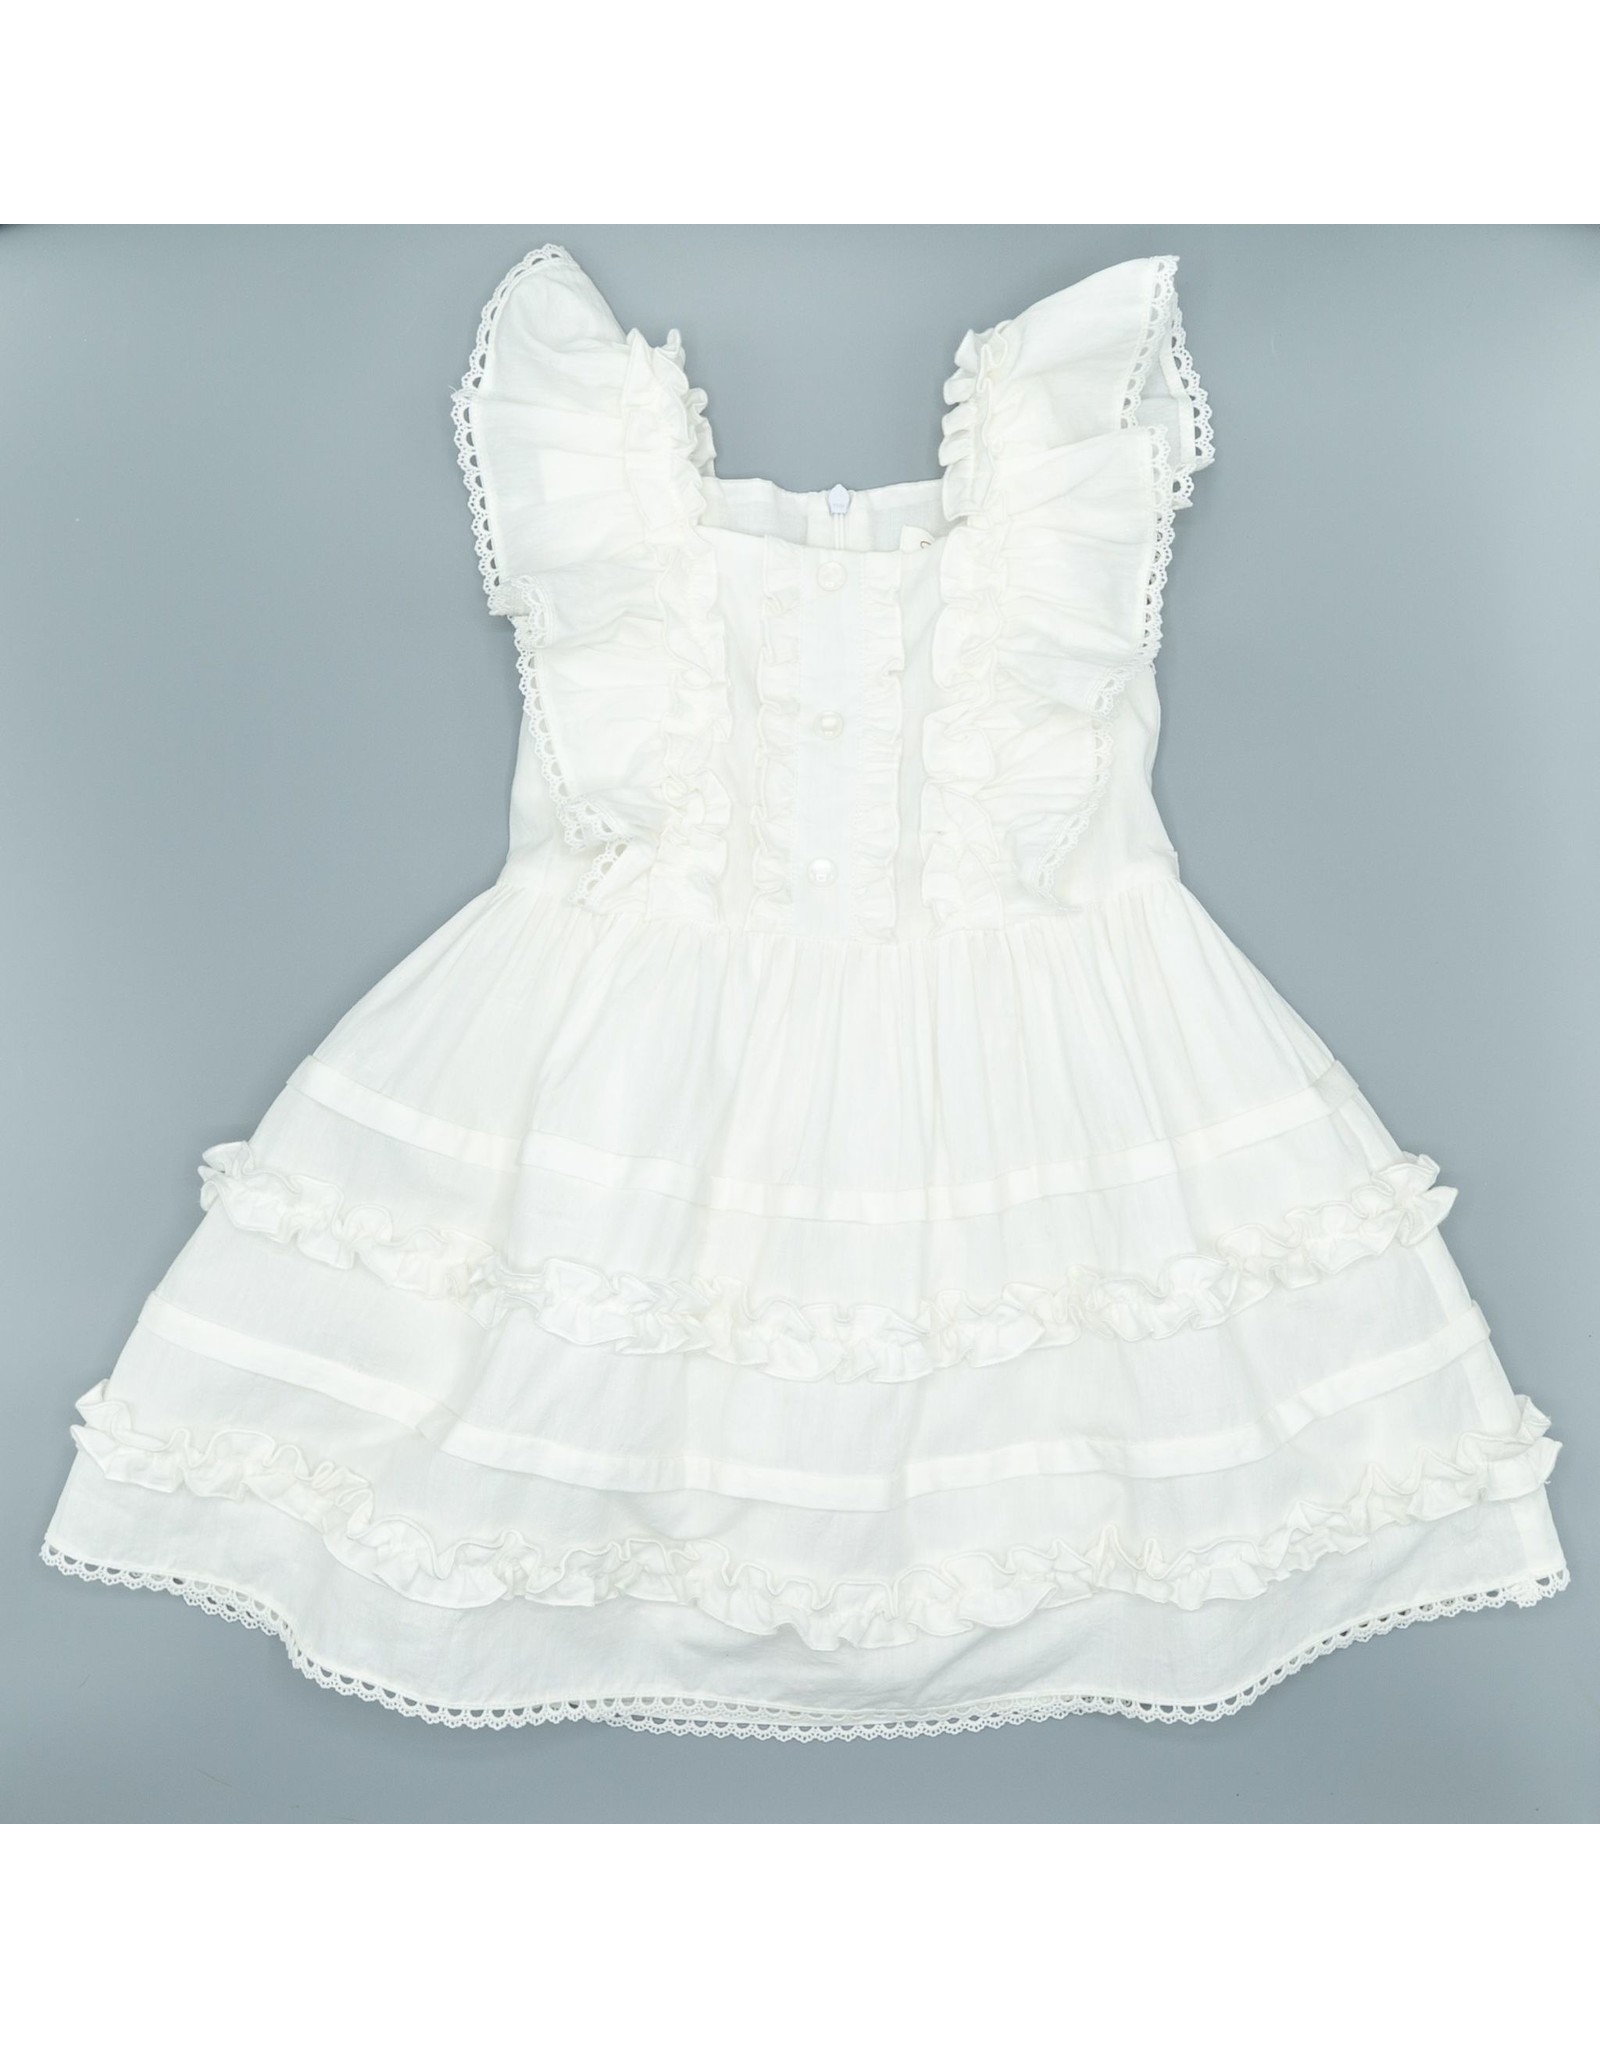 Evie's Closet Evie's Closet- White Truffle Dress